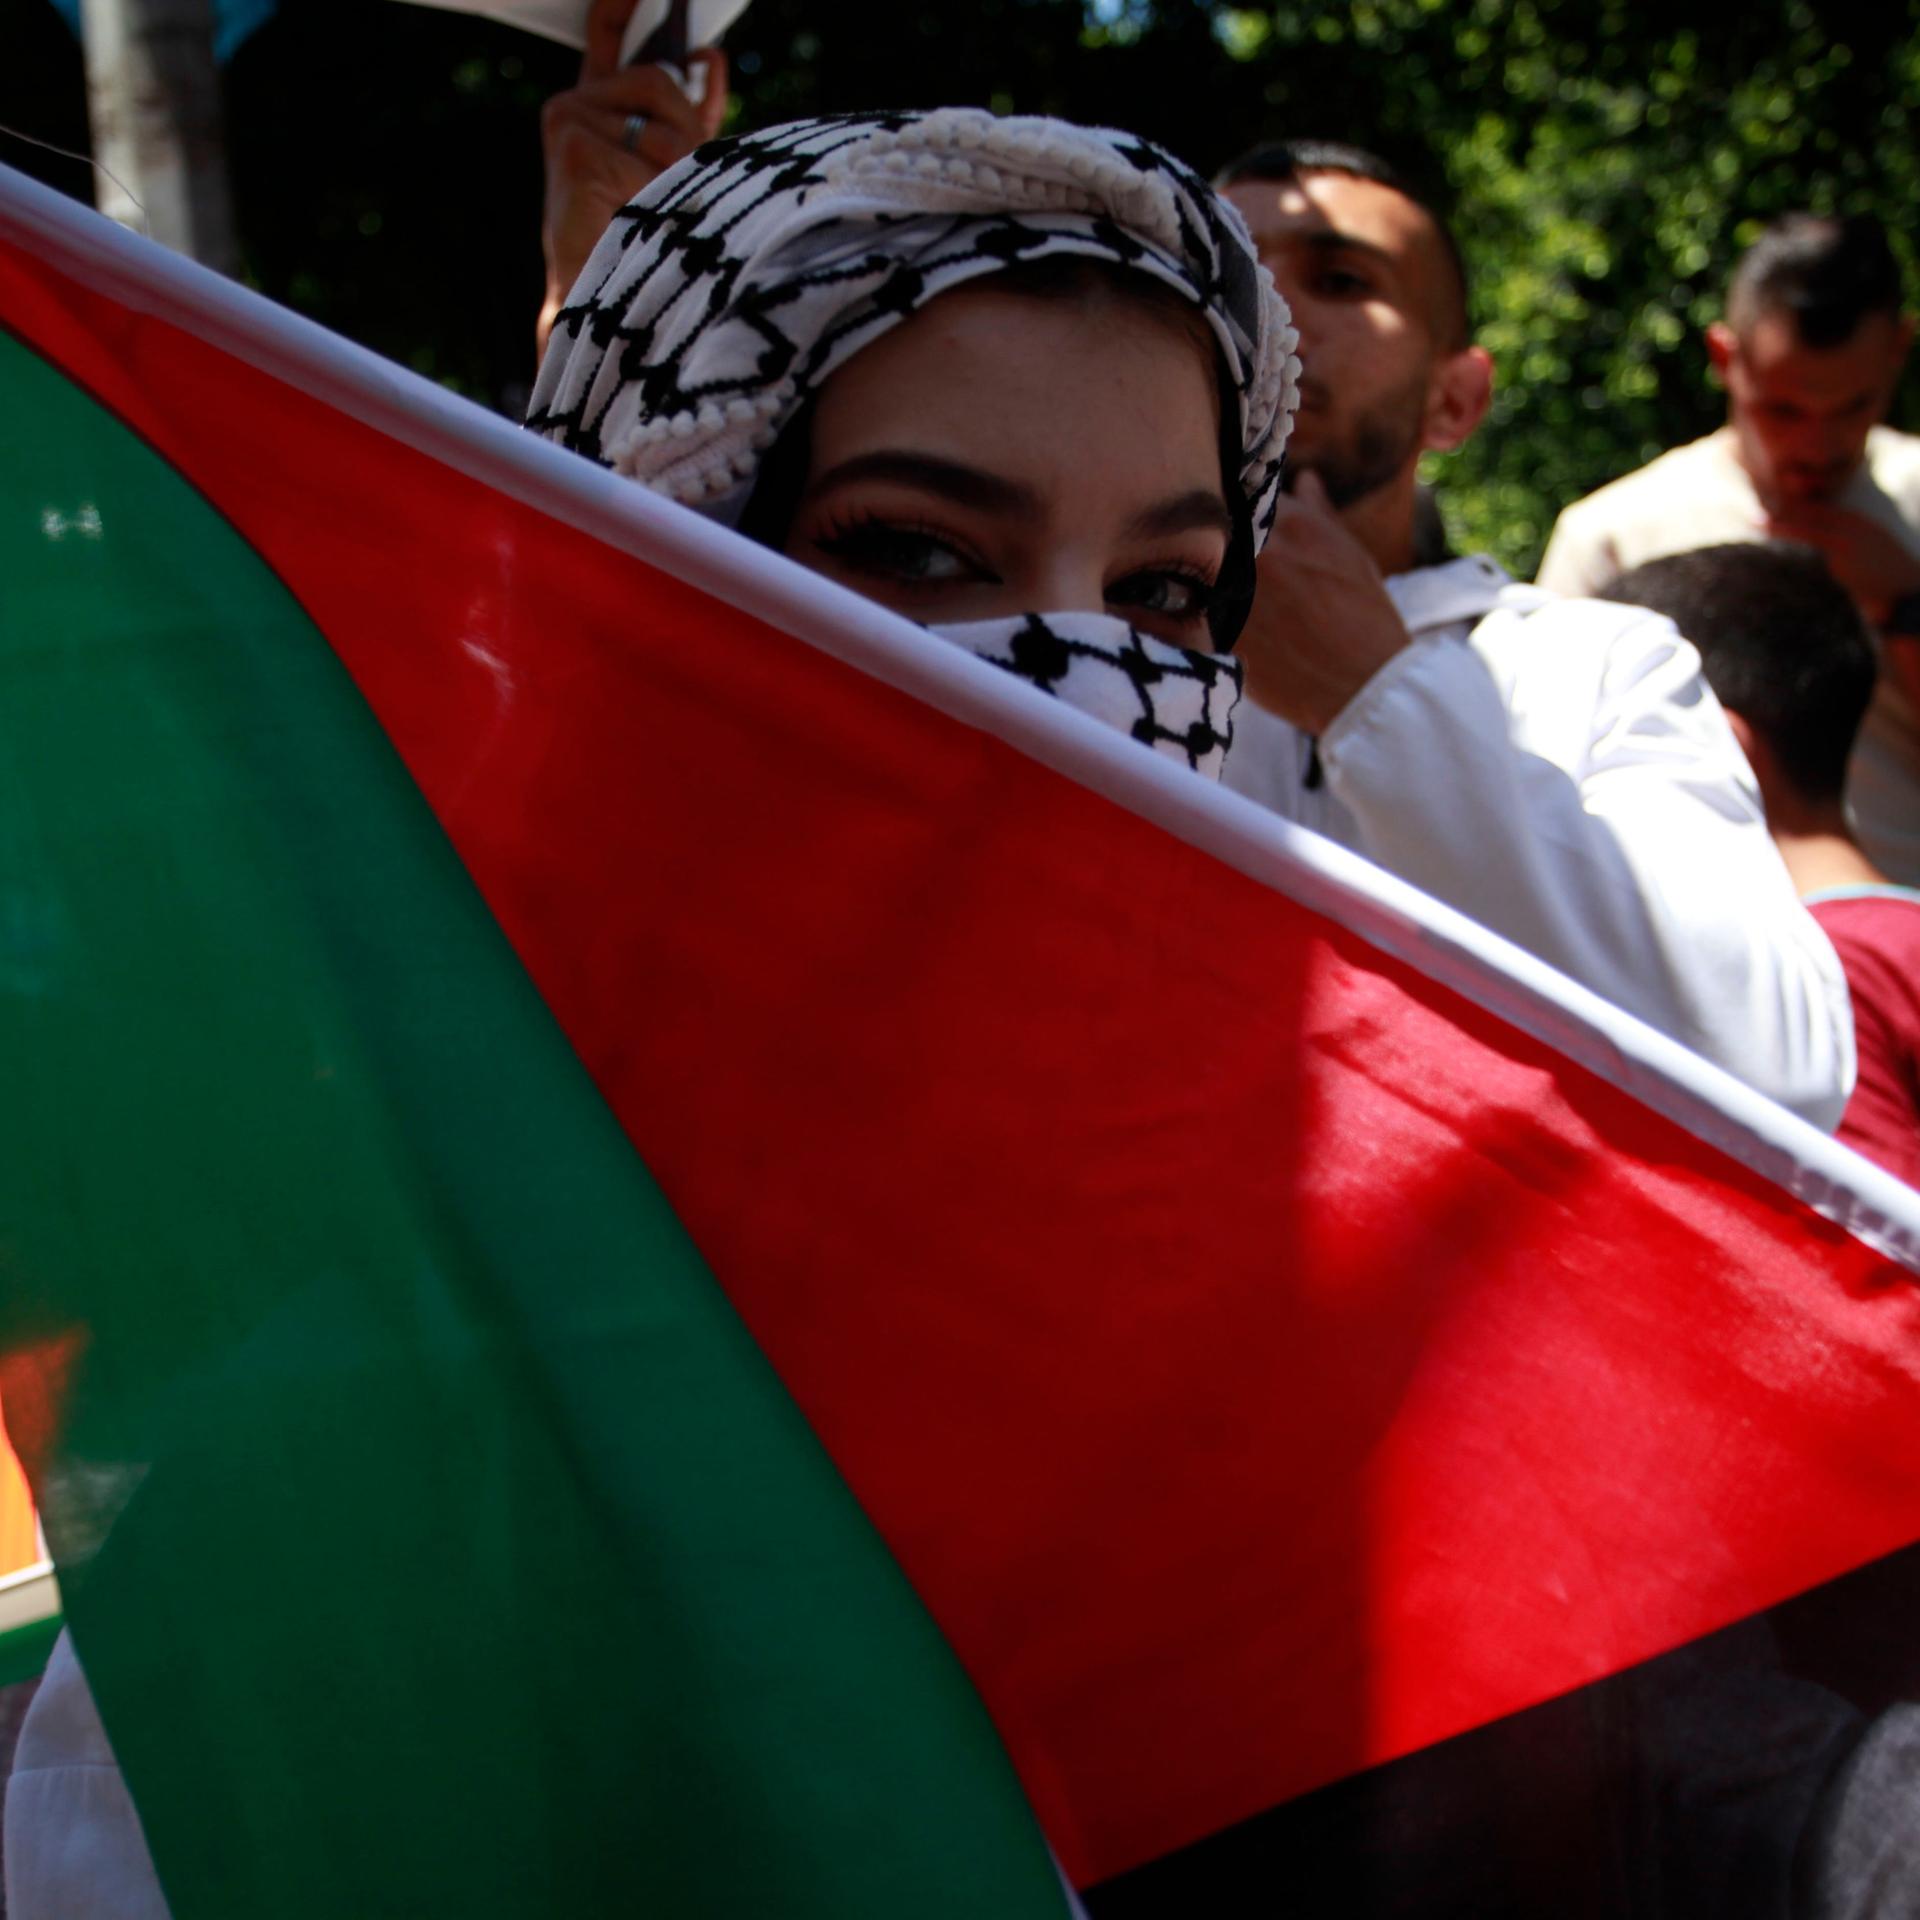 "Pro-palästinensisch" - Beschreiben Medien Proteste zu einseitig?